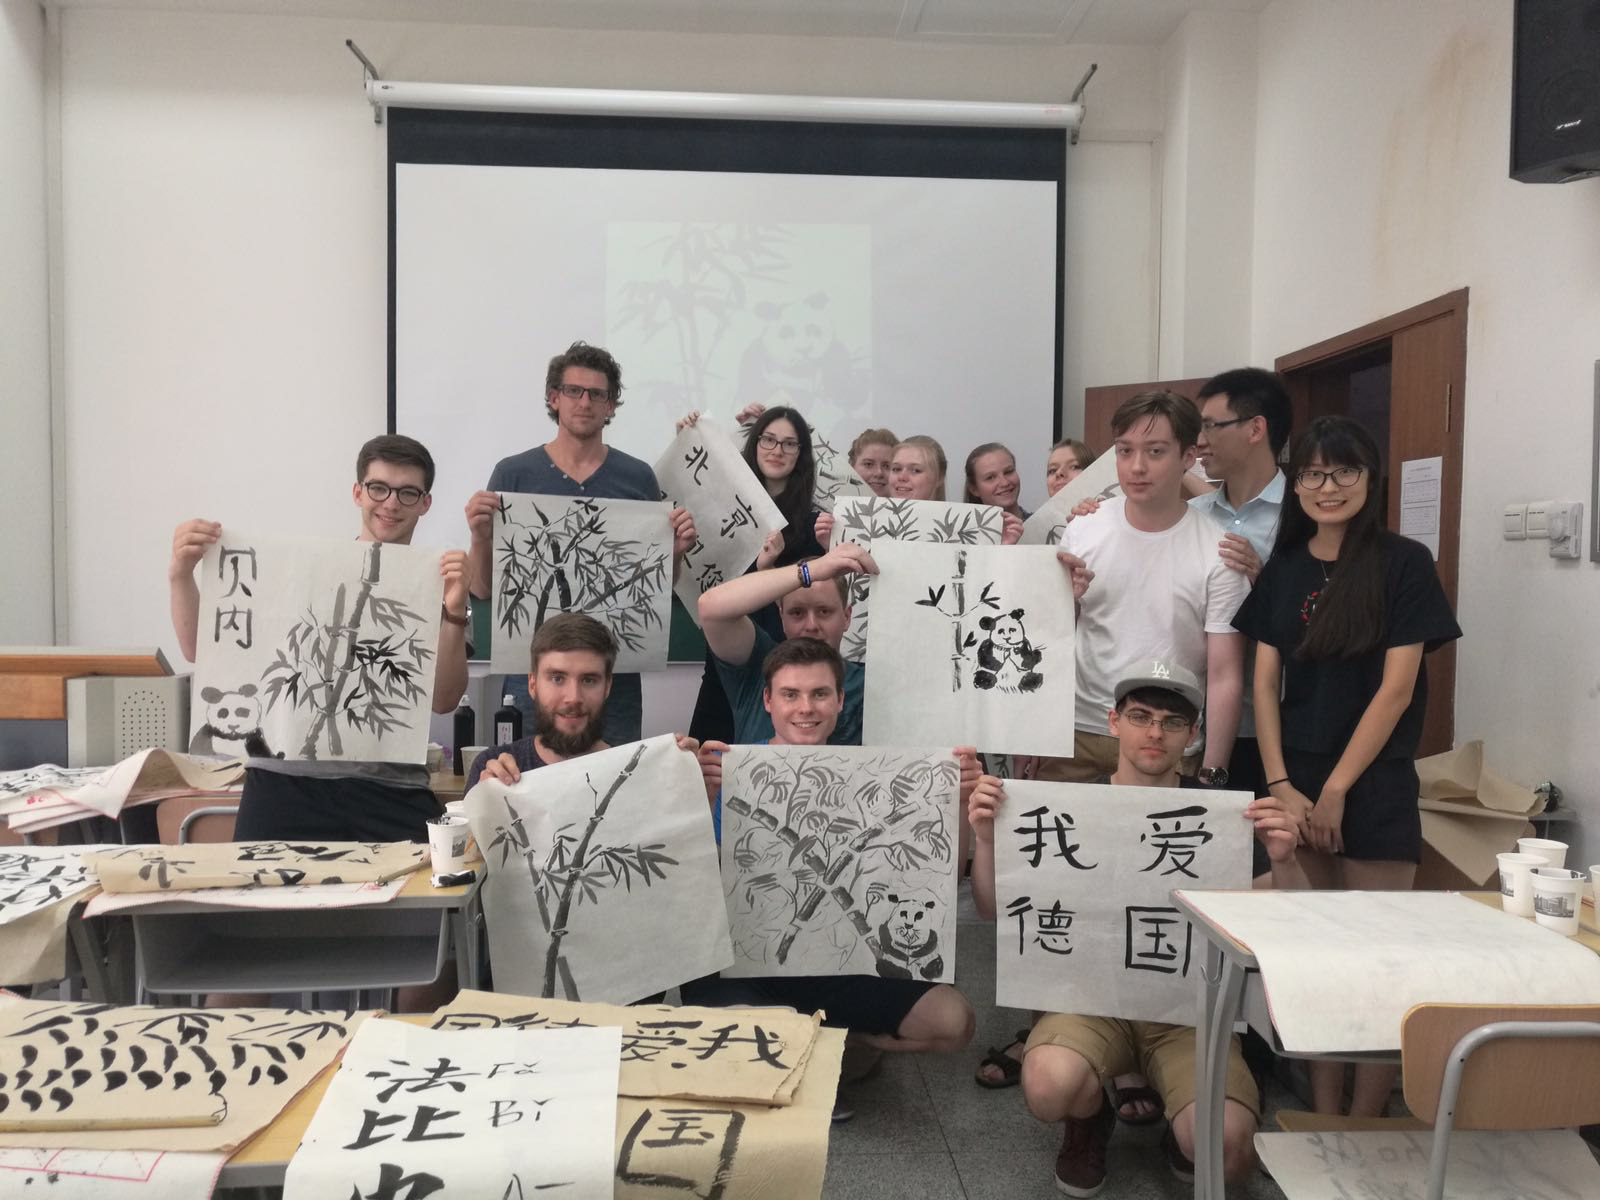 Nach der Mittagspause wurden wir dann von mehreren chinesischen Studenten in Kalligraphie und chinesischer Malerei unterrichtet.